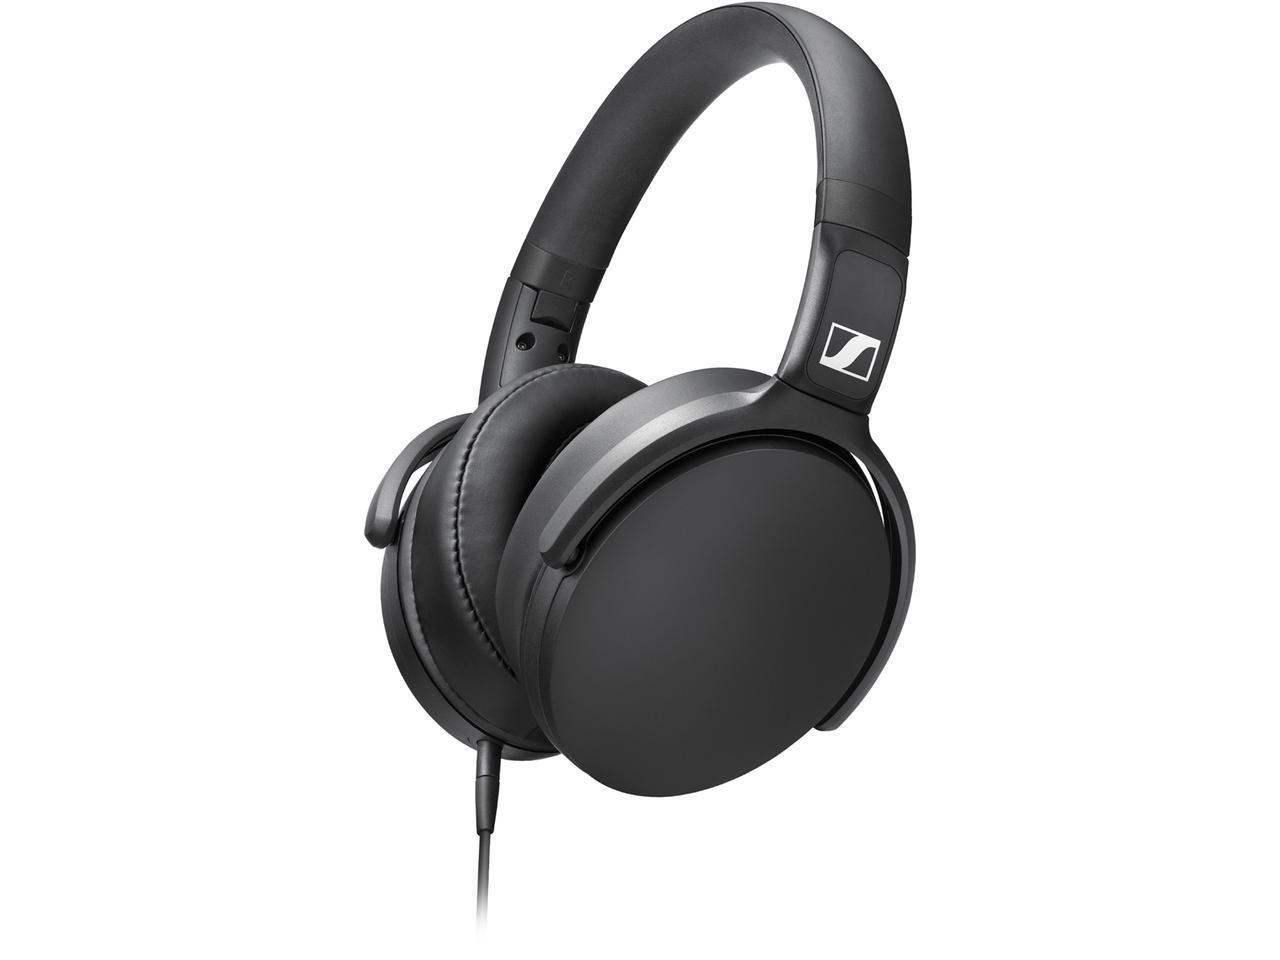 Sennheiser HD 400S headphones in black